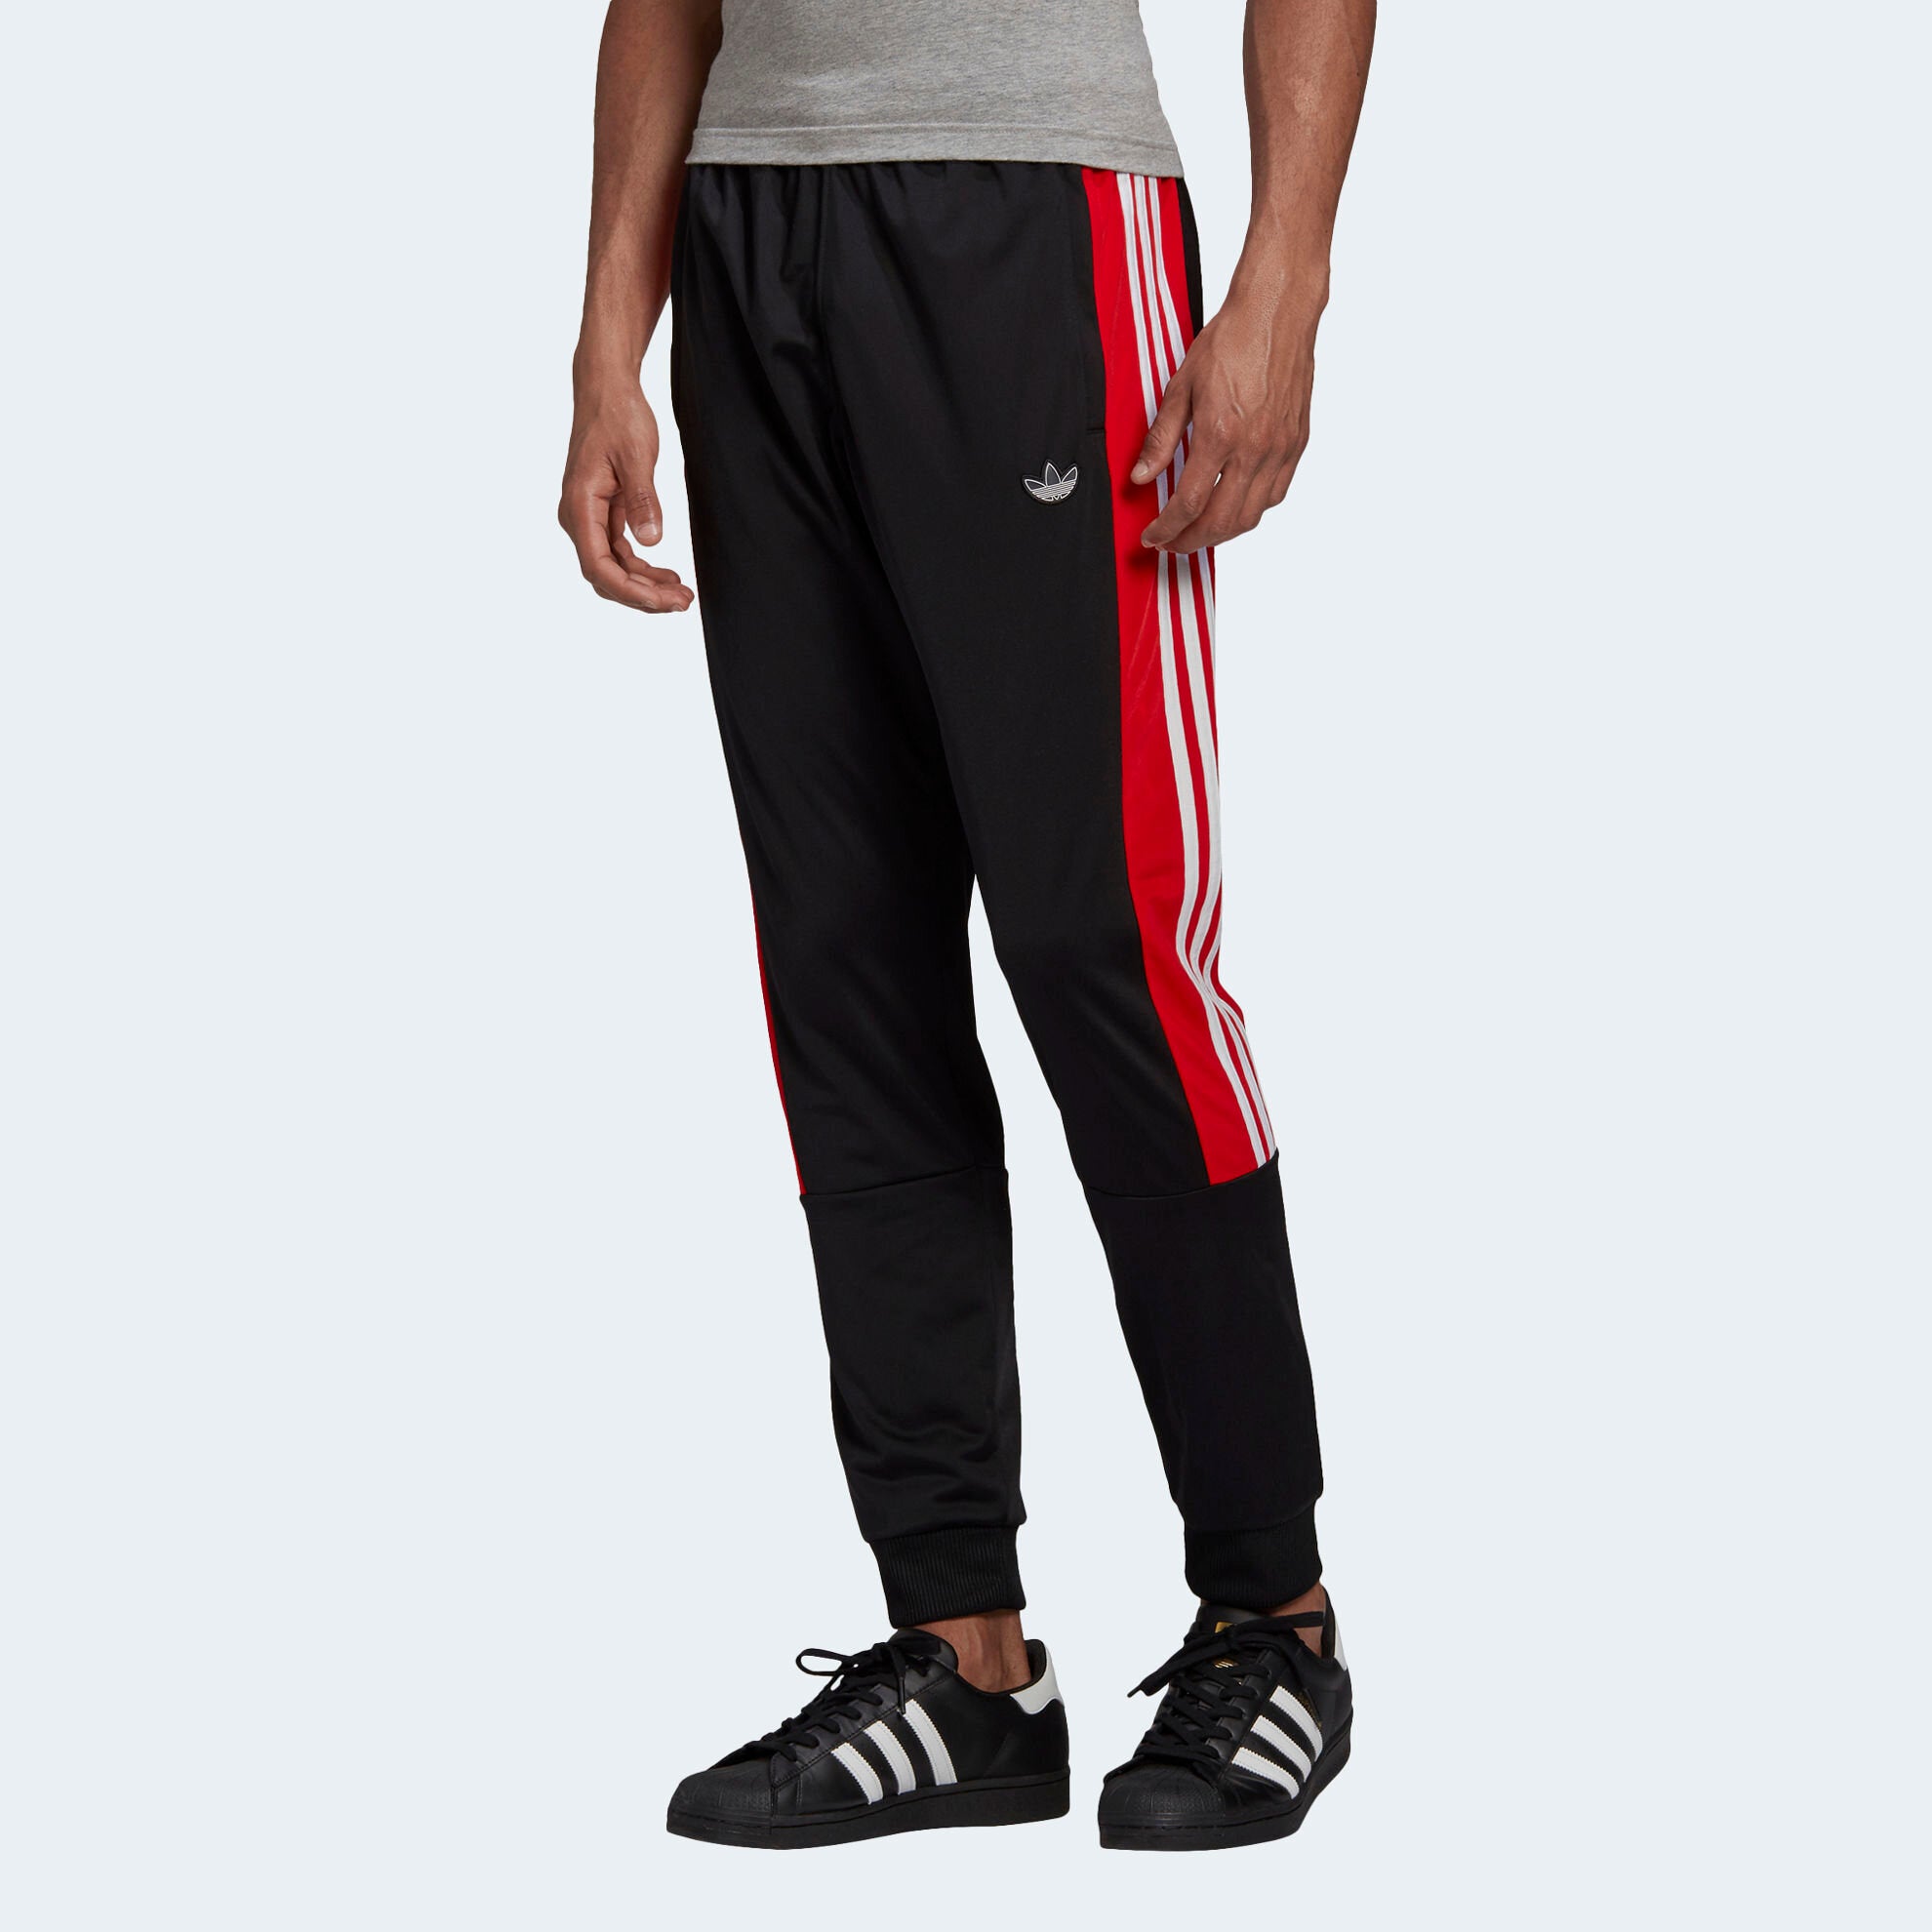 Adidas Originals Men's BX-20 Track Pants - Trade